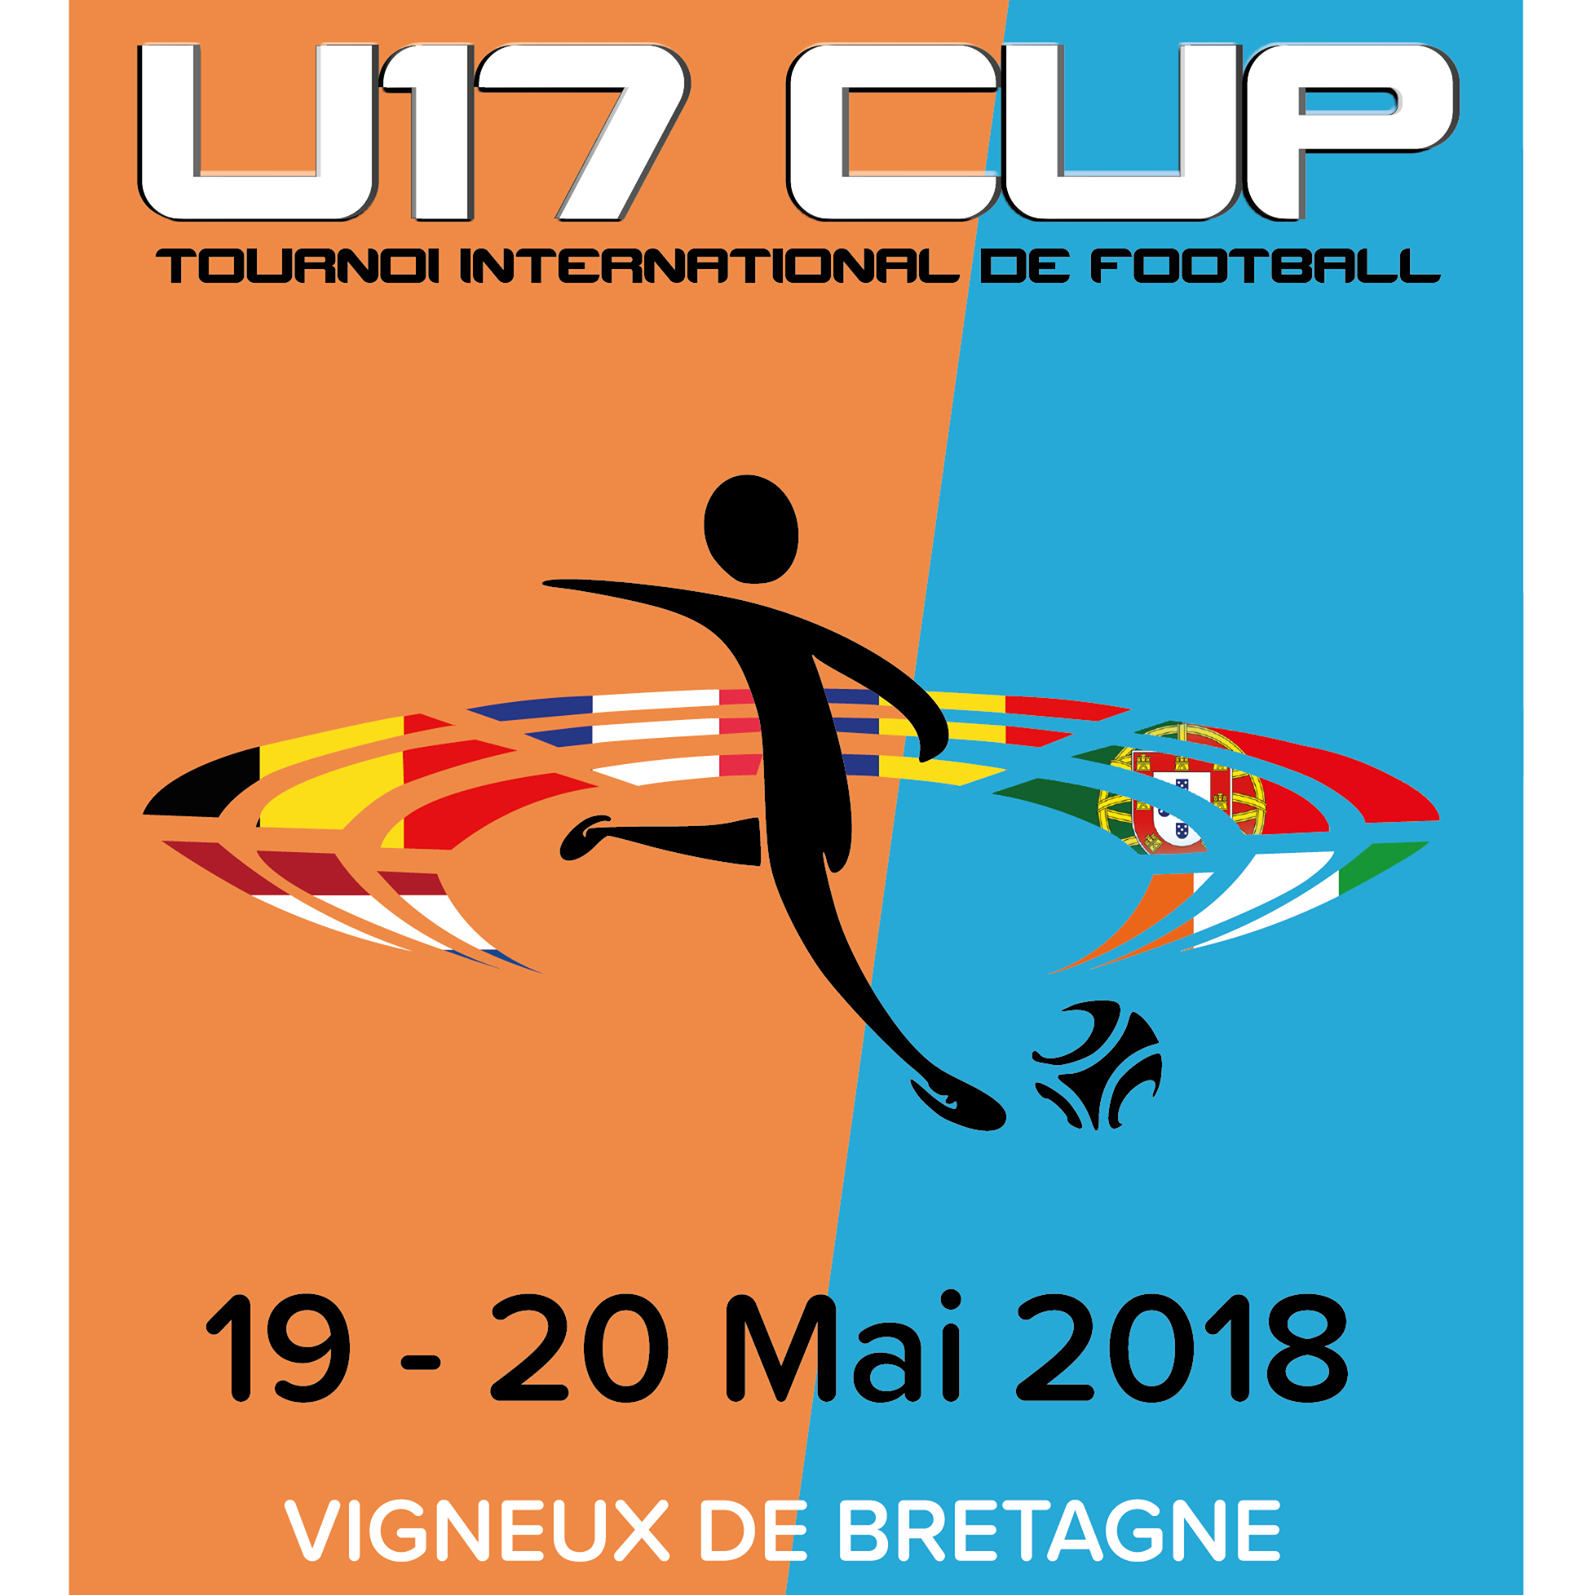 U17 Cup: 19/20 mai